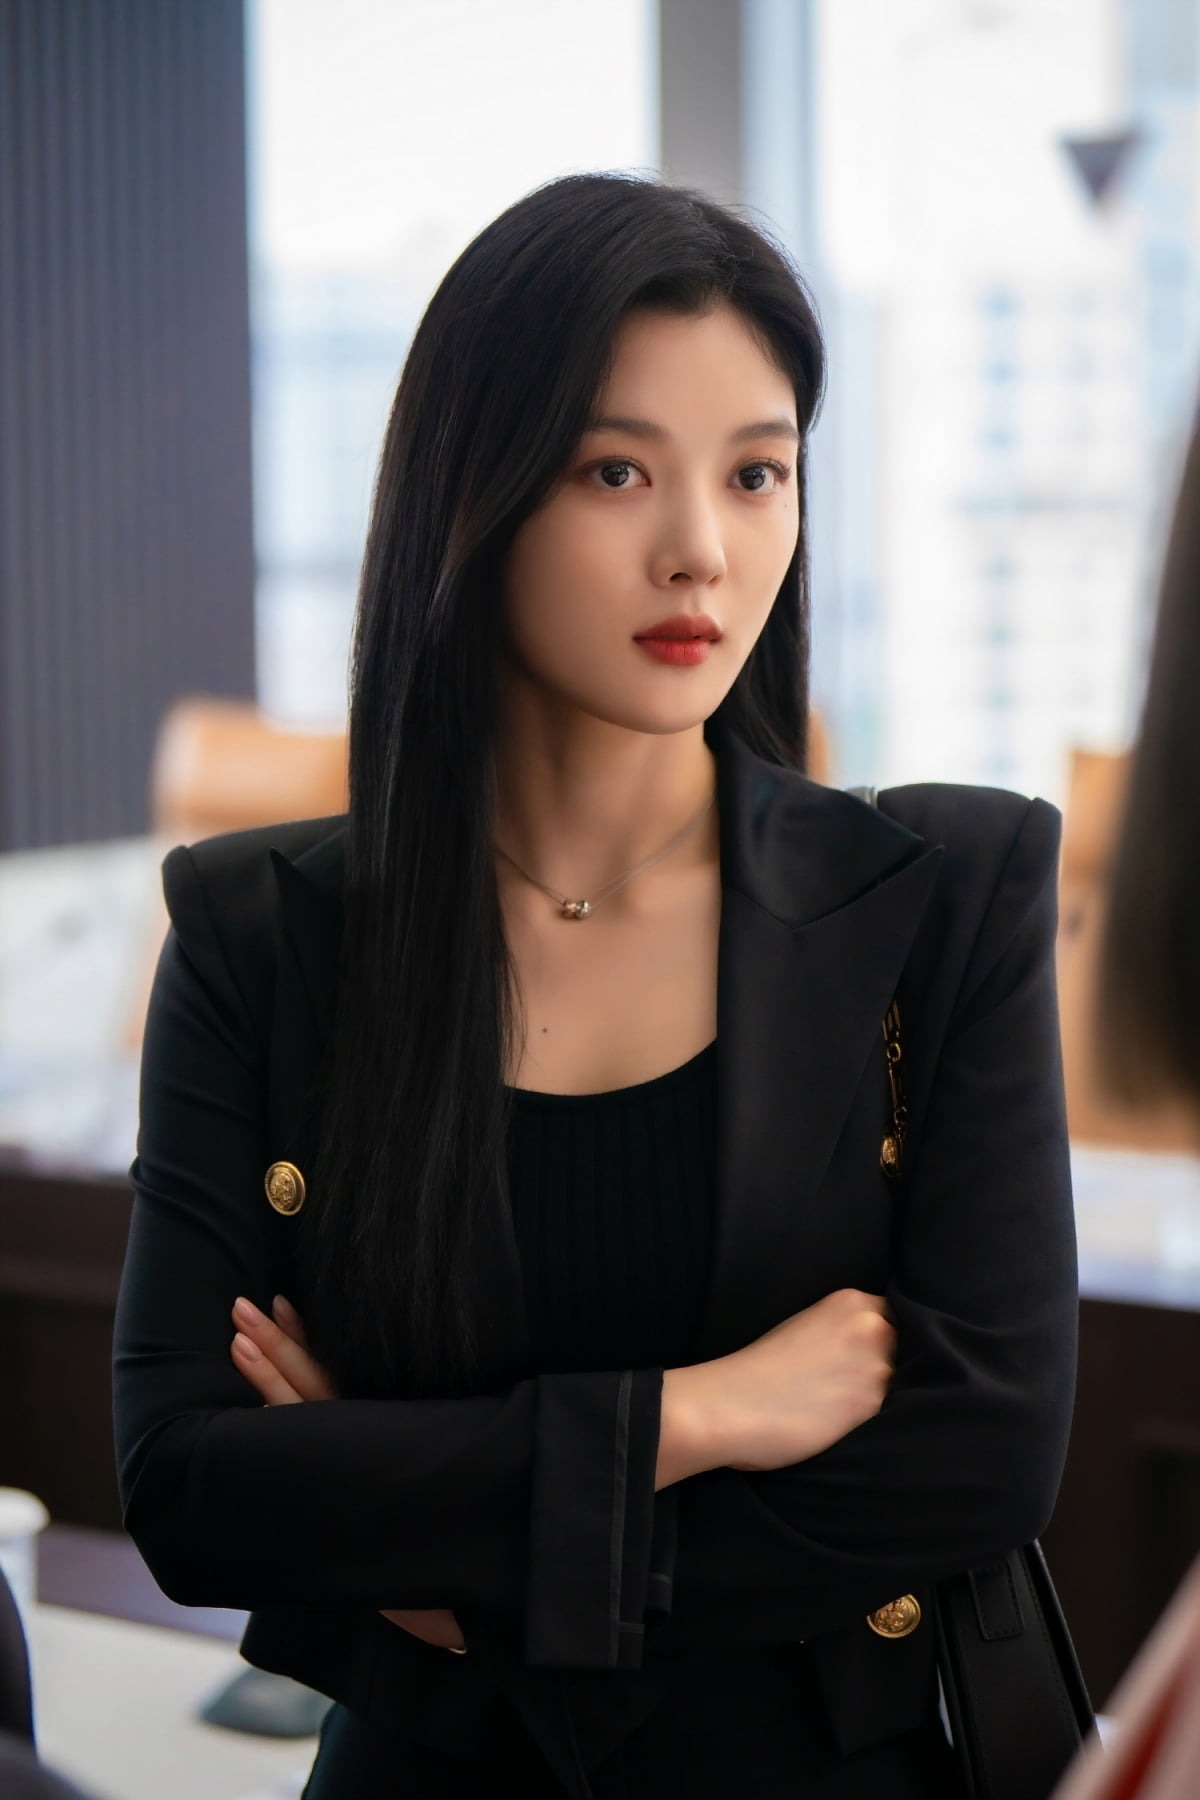 Kim Yoo Jung cũng chưng diện một số trang phục hàng hiệu, nhằm thể hiện vẻ xa hoa của giới thượng lưu. Bằng cách chọn một chiếc áo gọn gàng đi cùng váy đồng màu, cô tạo nên diện mạo sắc sảo, chuyên nghiệp, dễ ứng dụng với dân văn phòng.